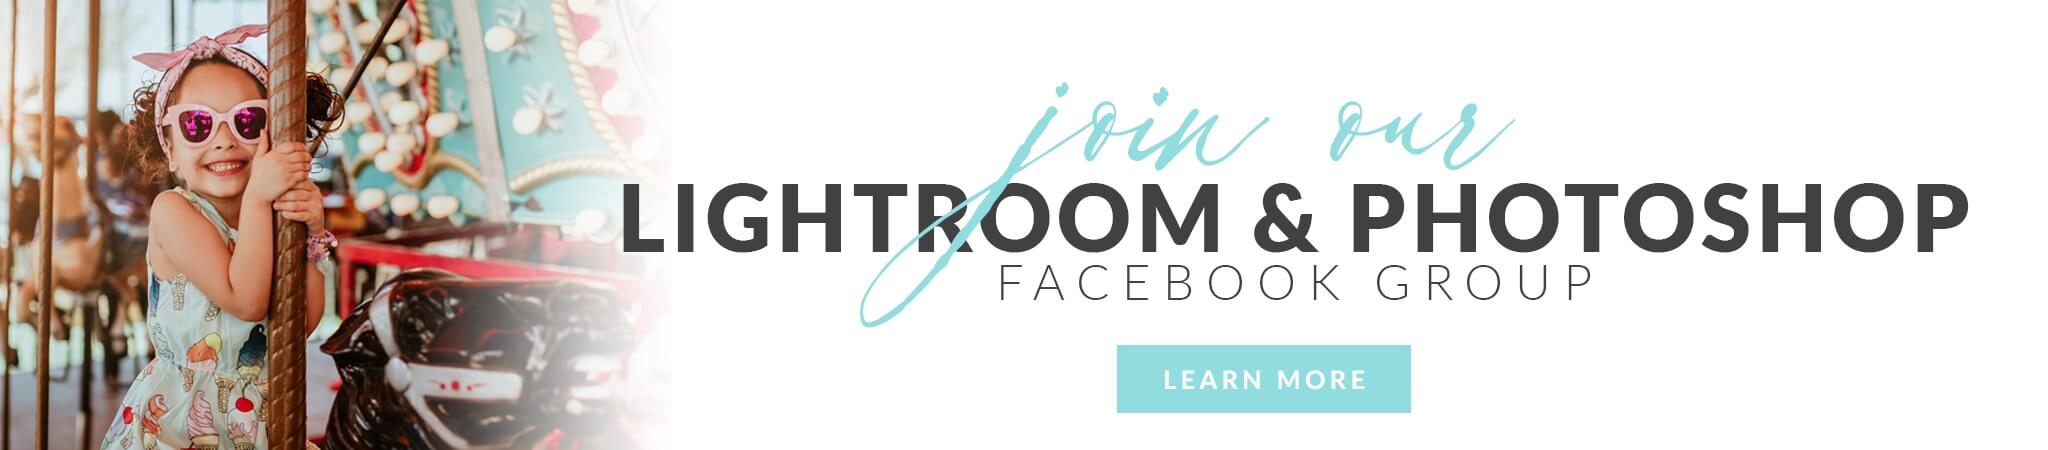 Lightroom Facebook Group